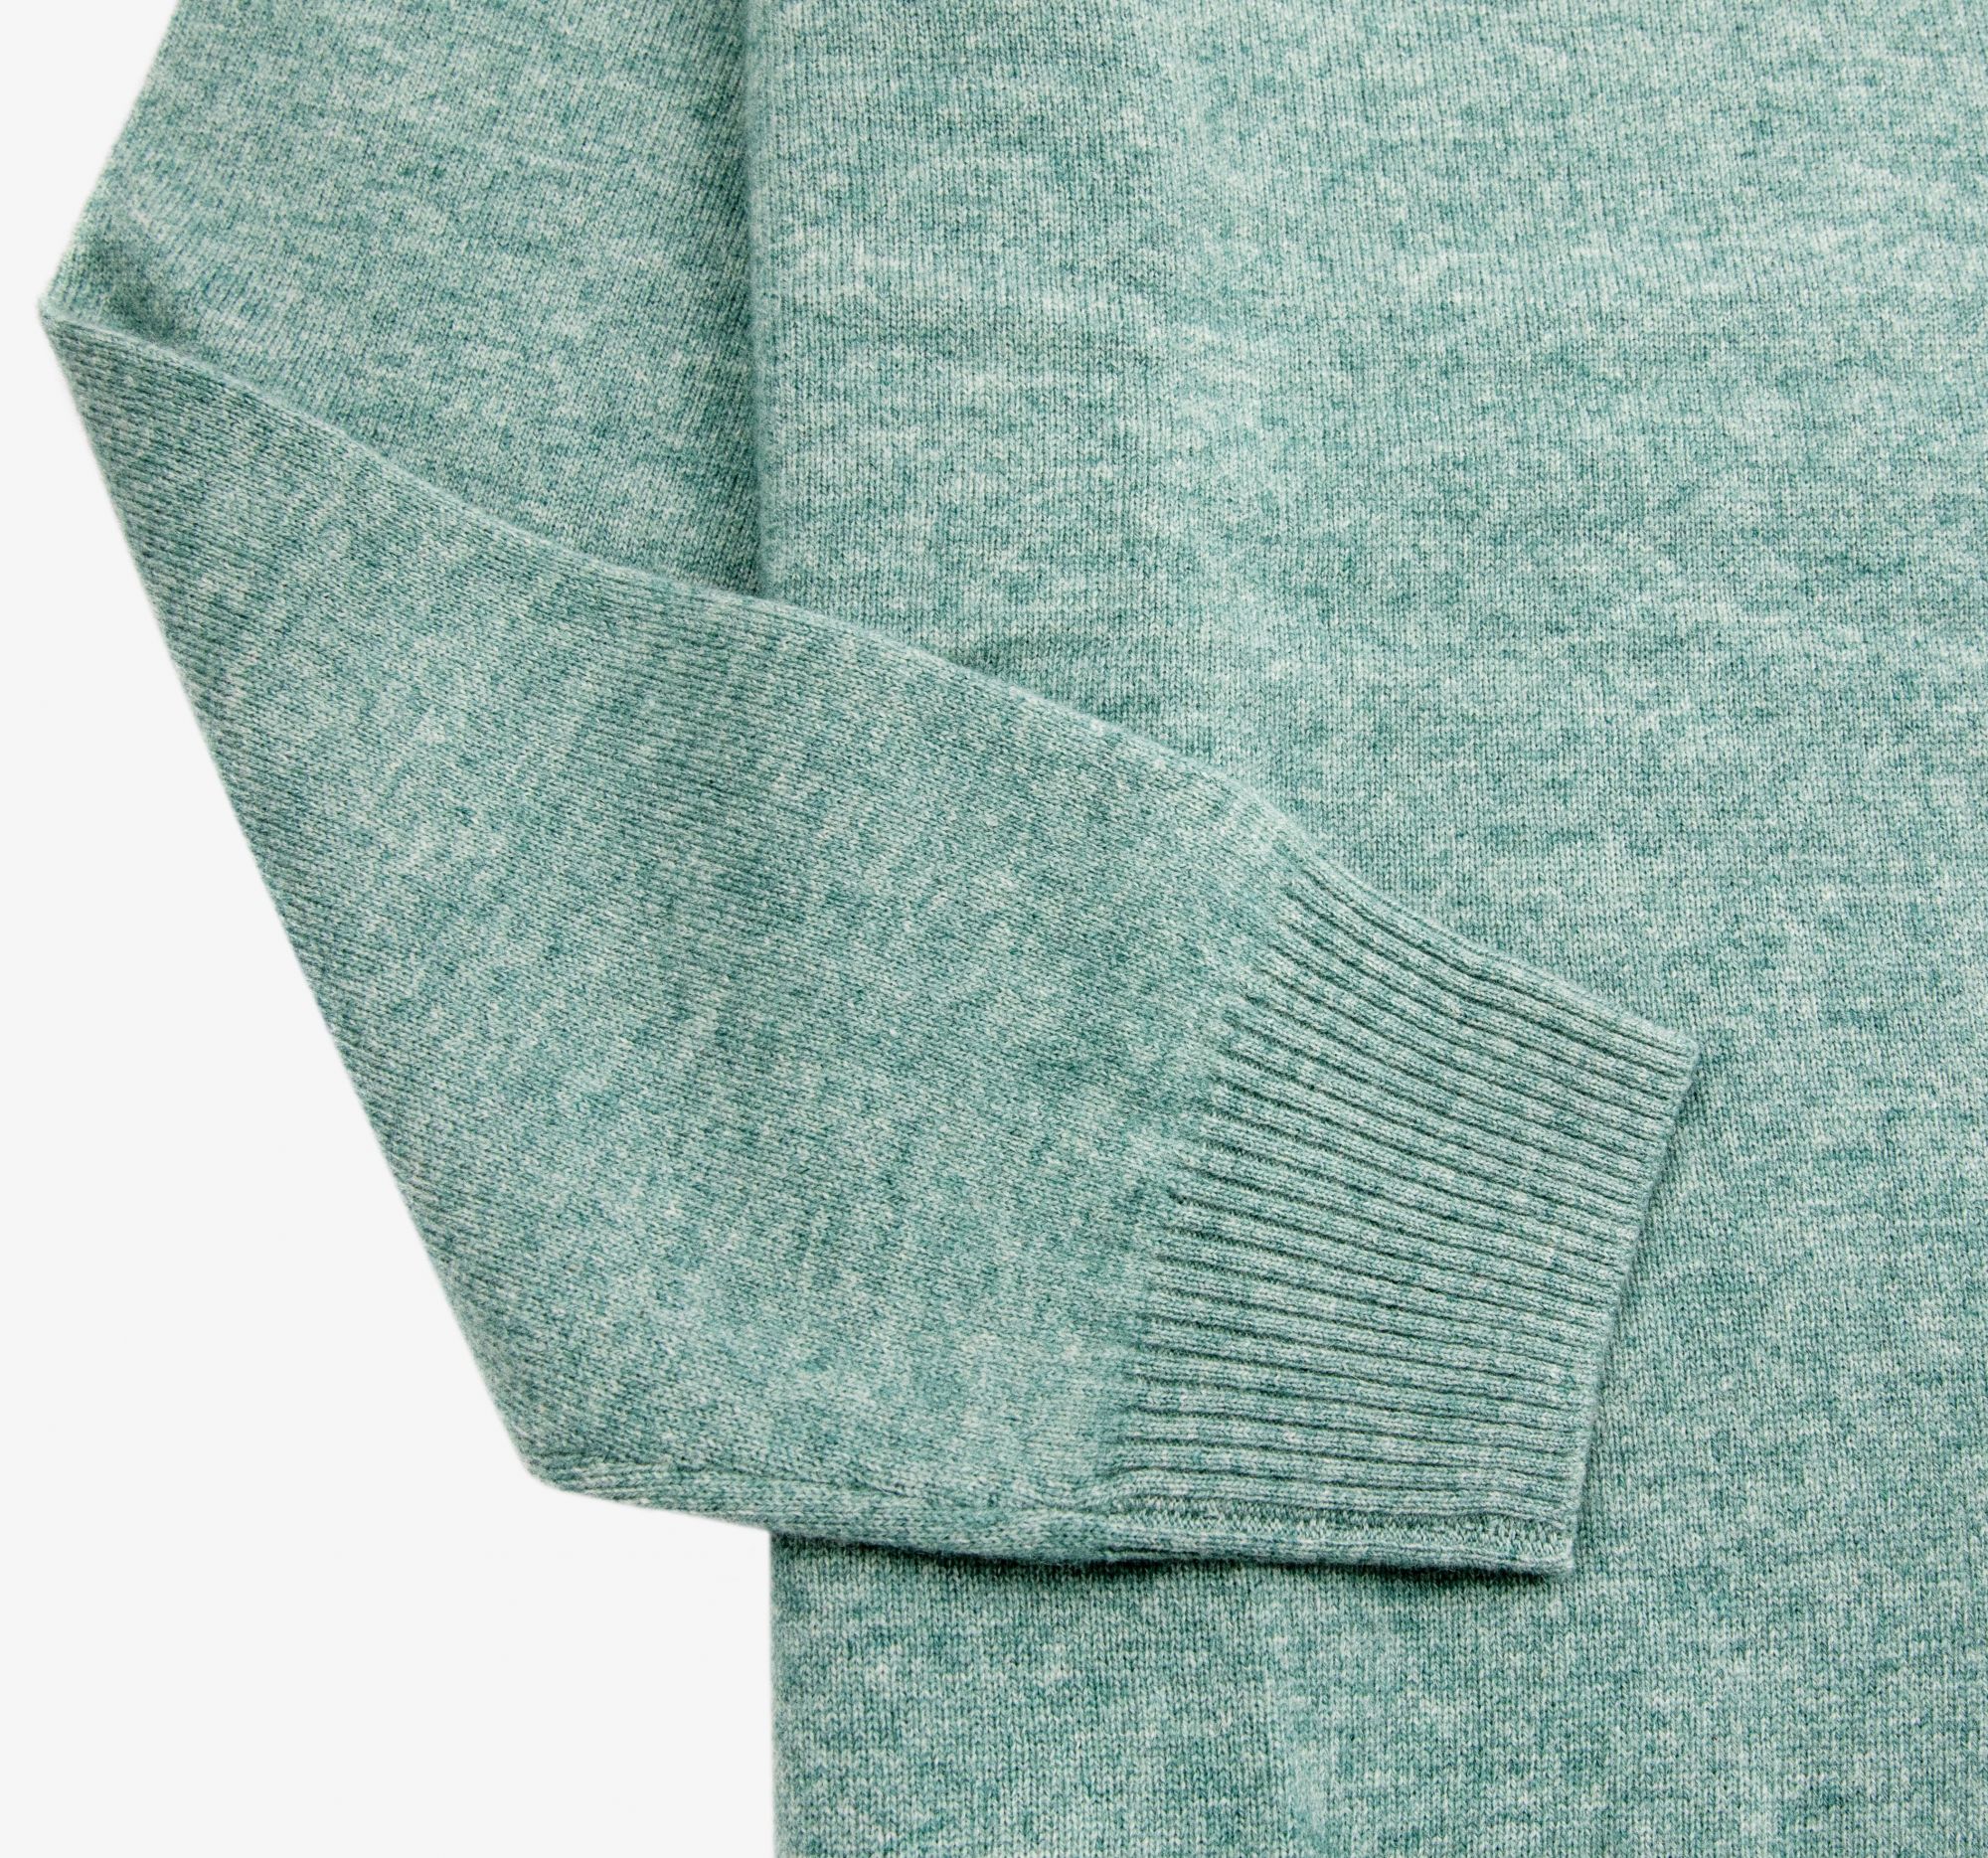 LEEZ Men V-neck Cashmere Sweater Green